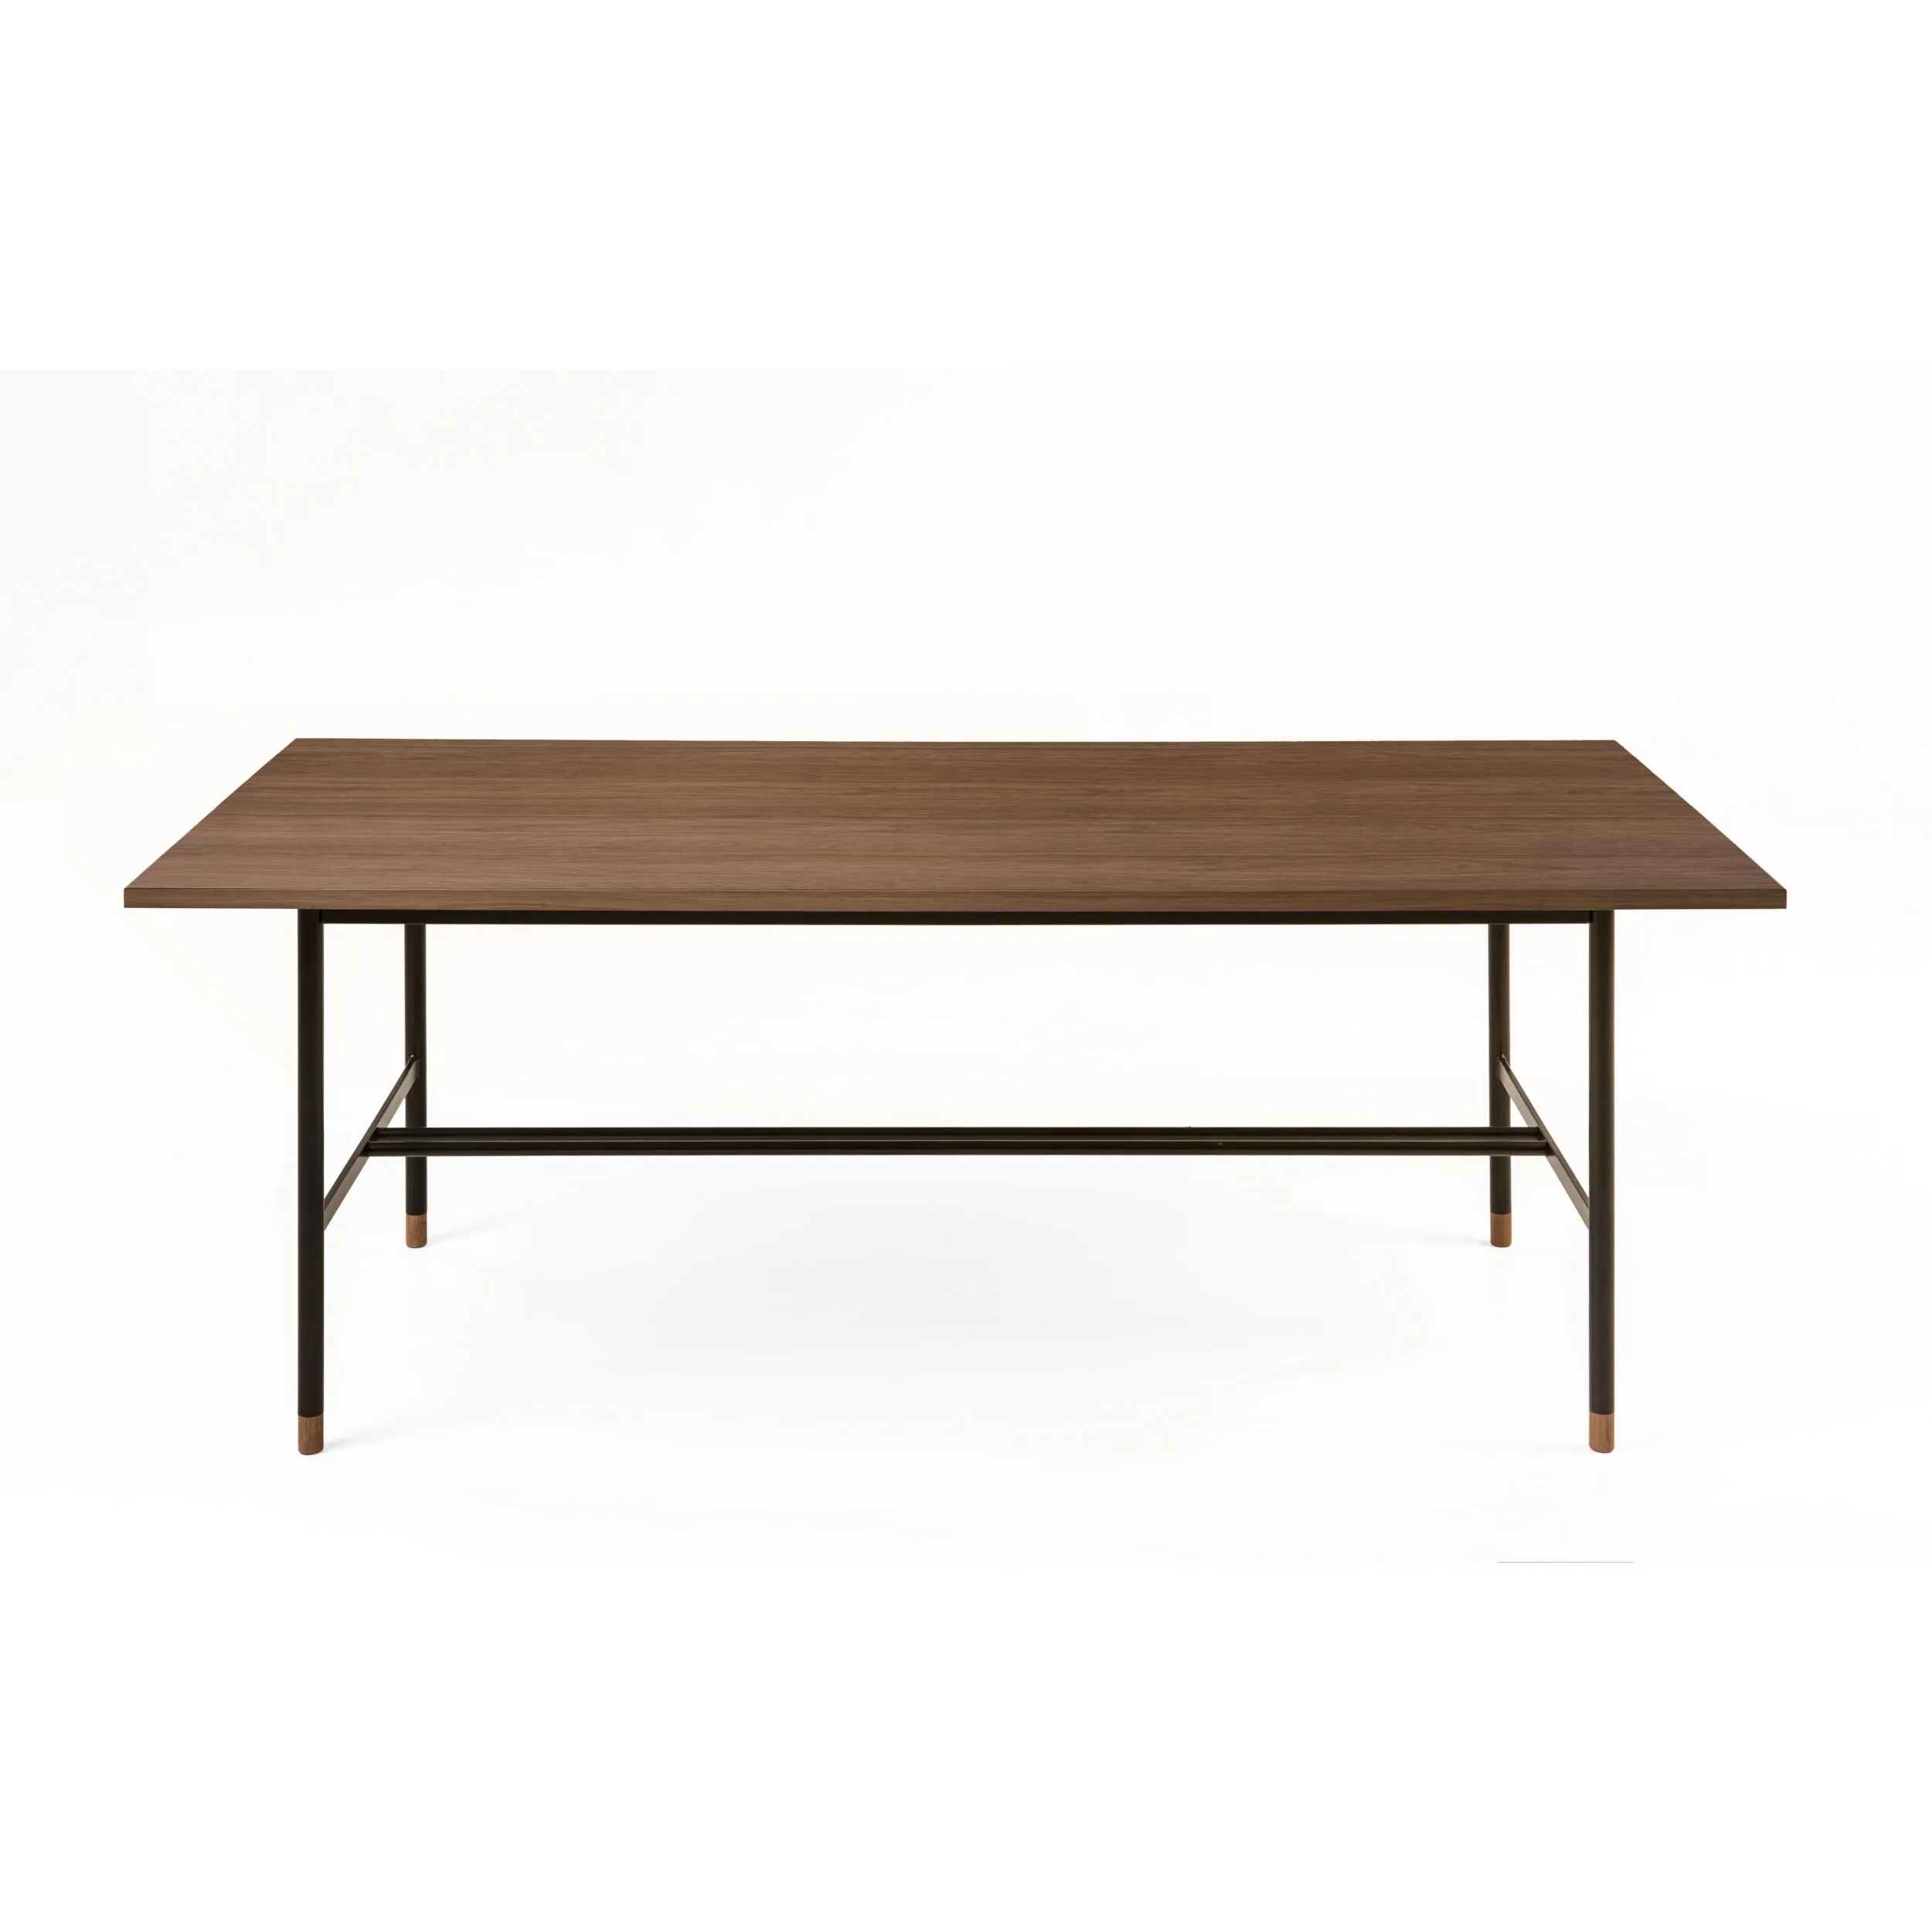 Tavolo da pranzo Jugend Noce in legno ingegnerizzato, acciaio, dimensioni 200 x 95 x h75 cm, peso 36 Kg, finitura noce, nero